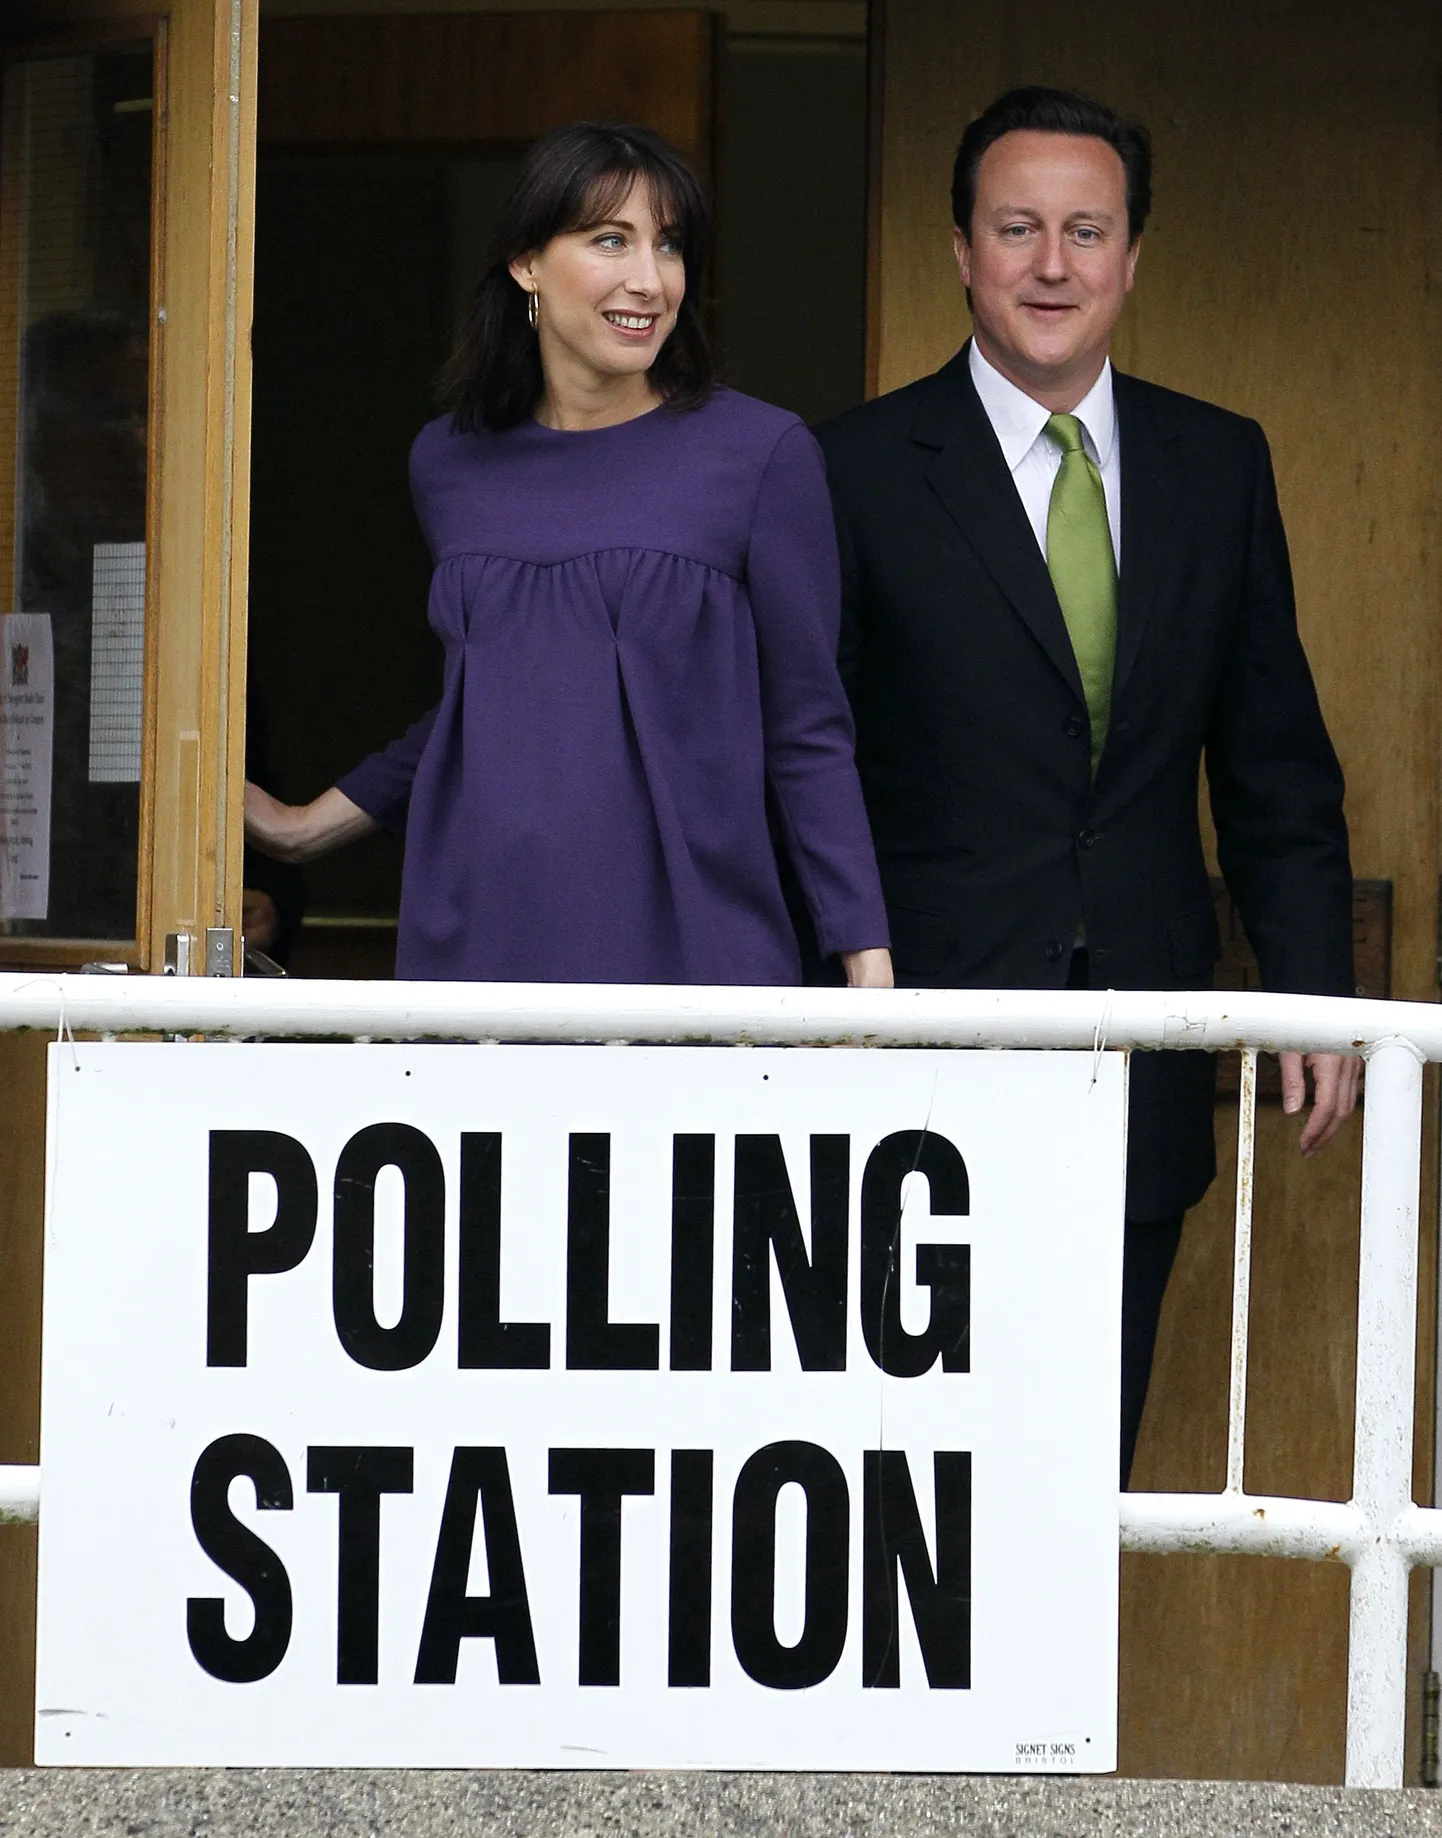 Briti konservatiivide peaministrikandidaat David Cameron koos abikaasaga valimisjaoskonnast väljumas.